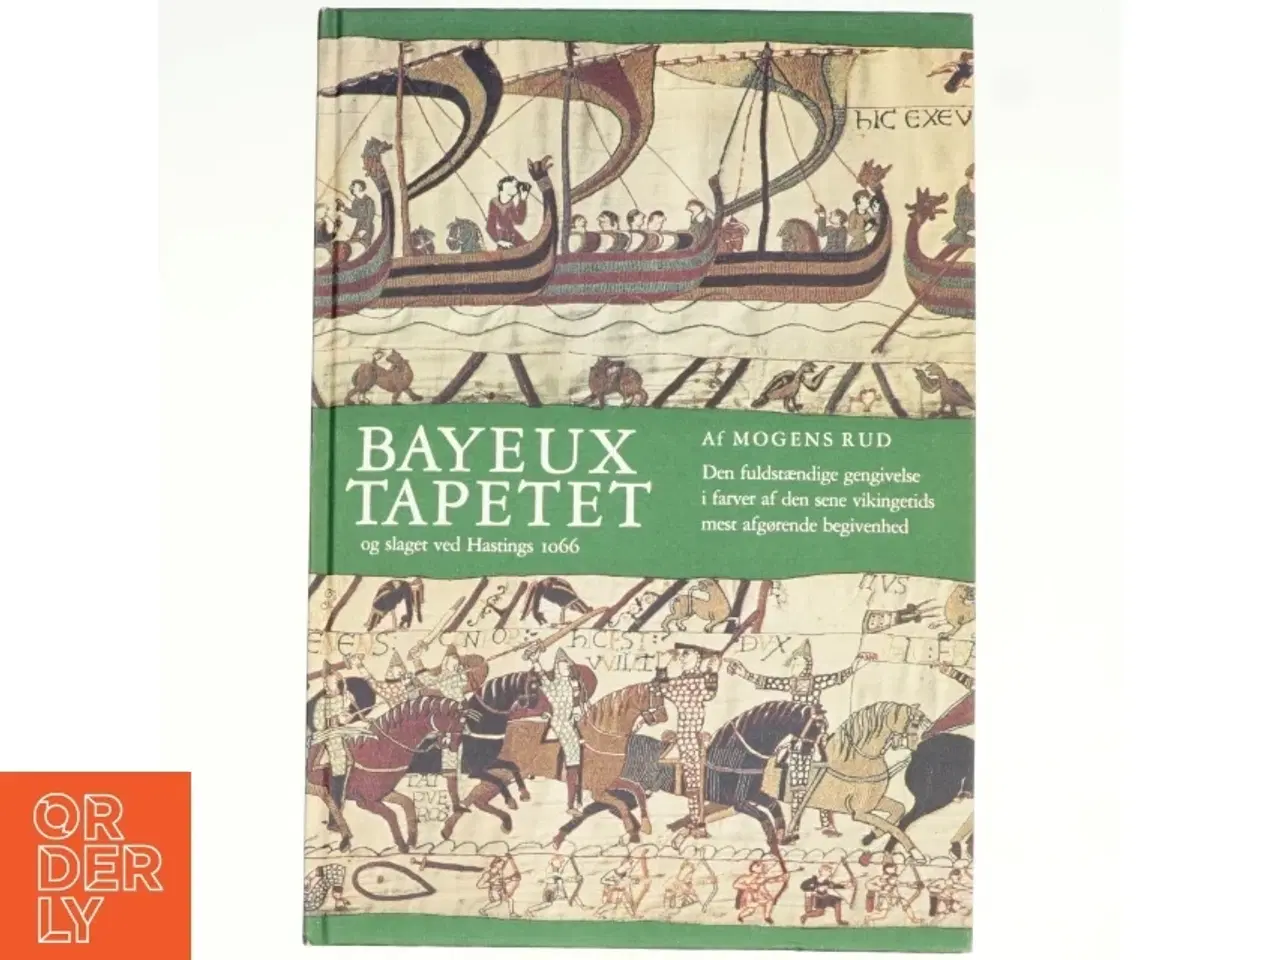 Billede 1 - Bayeuxtapetet og slaget ved Hastings af Mogens Rud (bog)